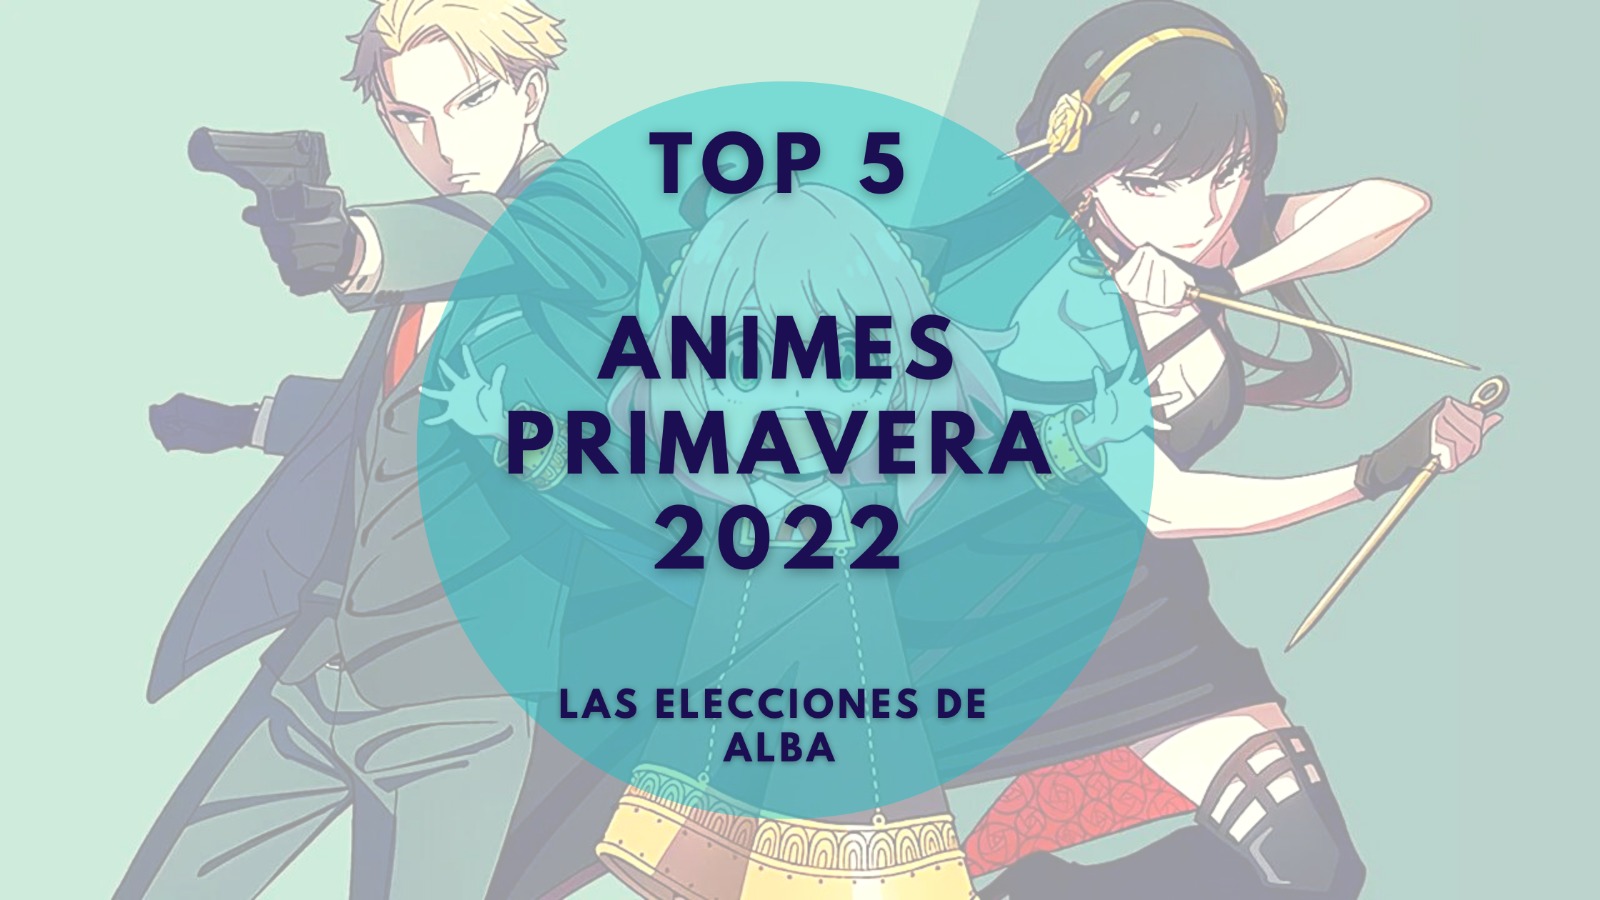 Nuestros 5 animes favoritos de primavera 2022 (II)